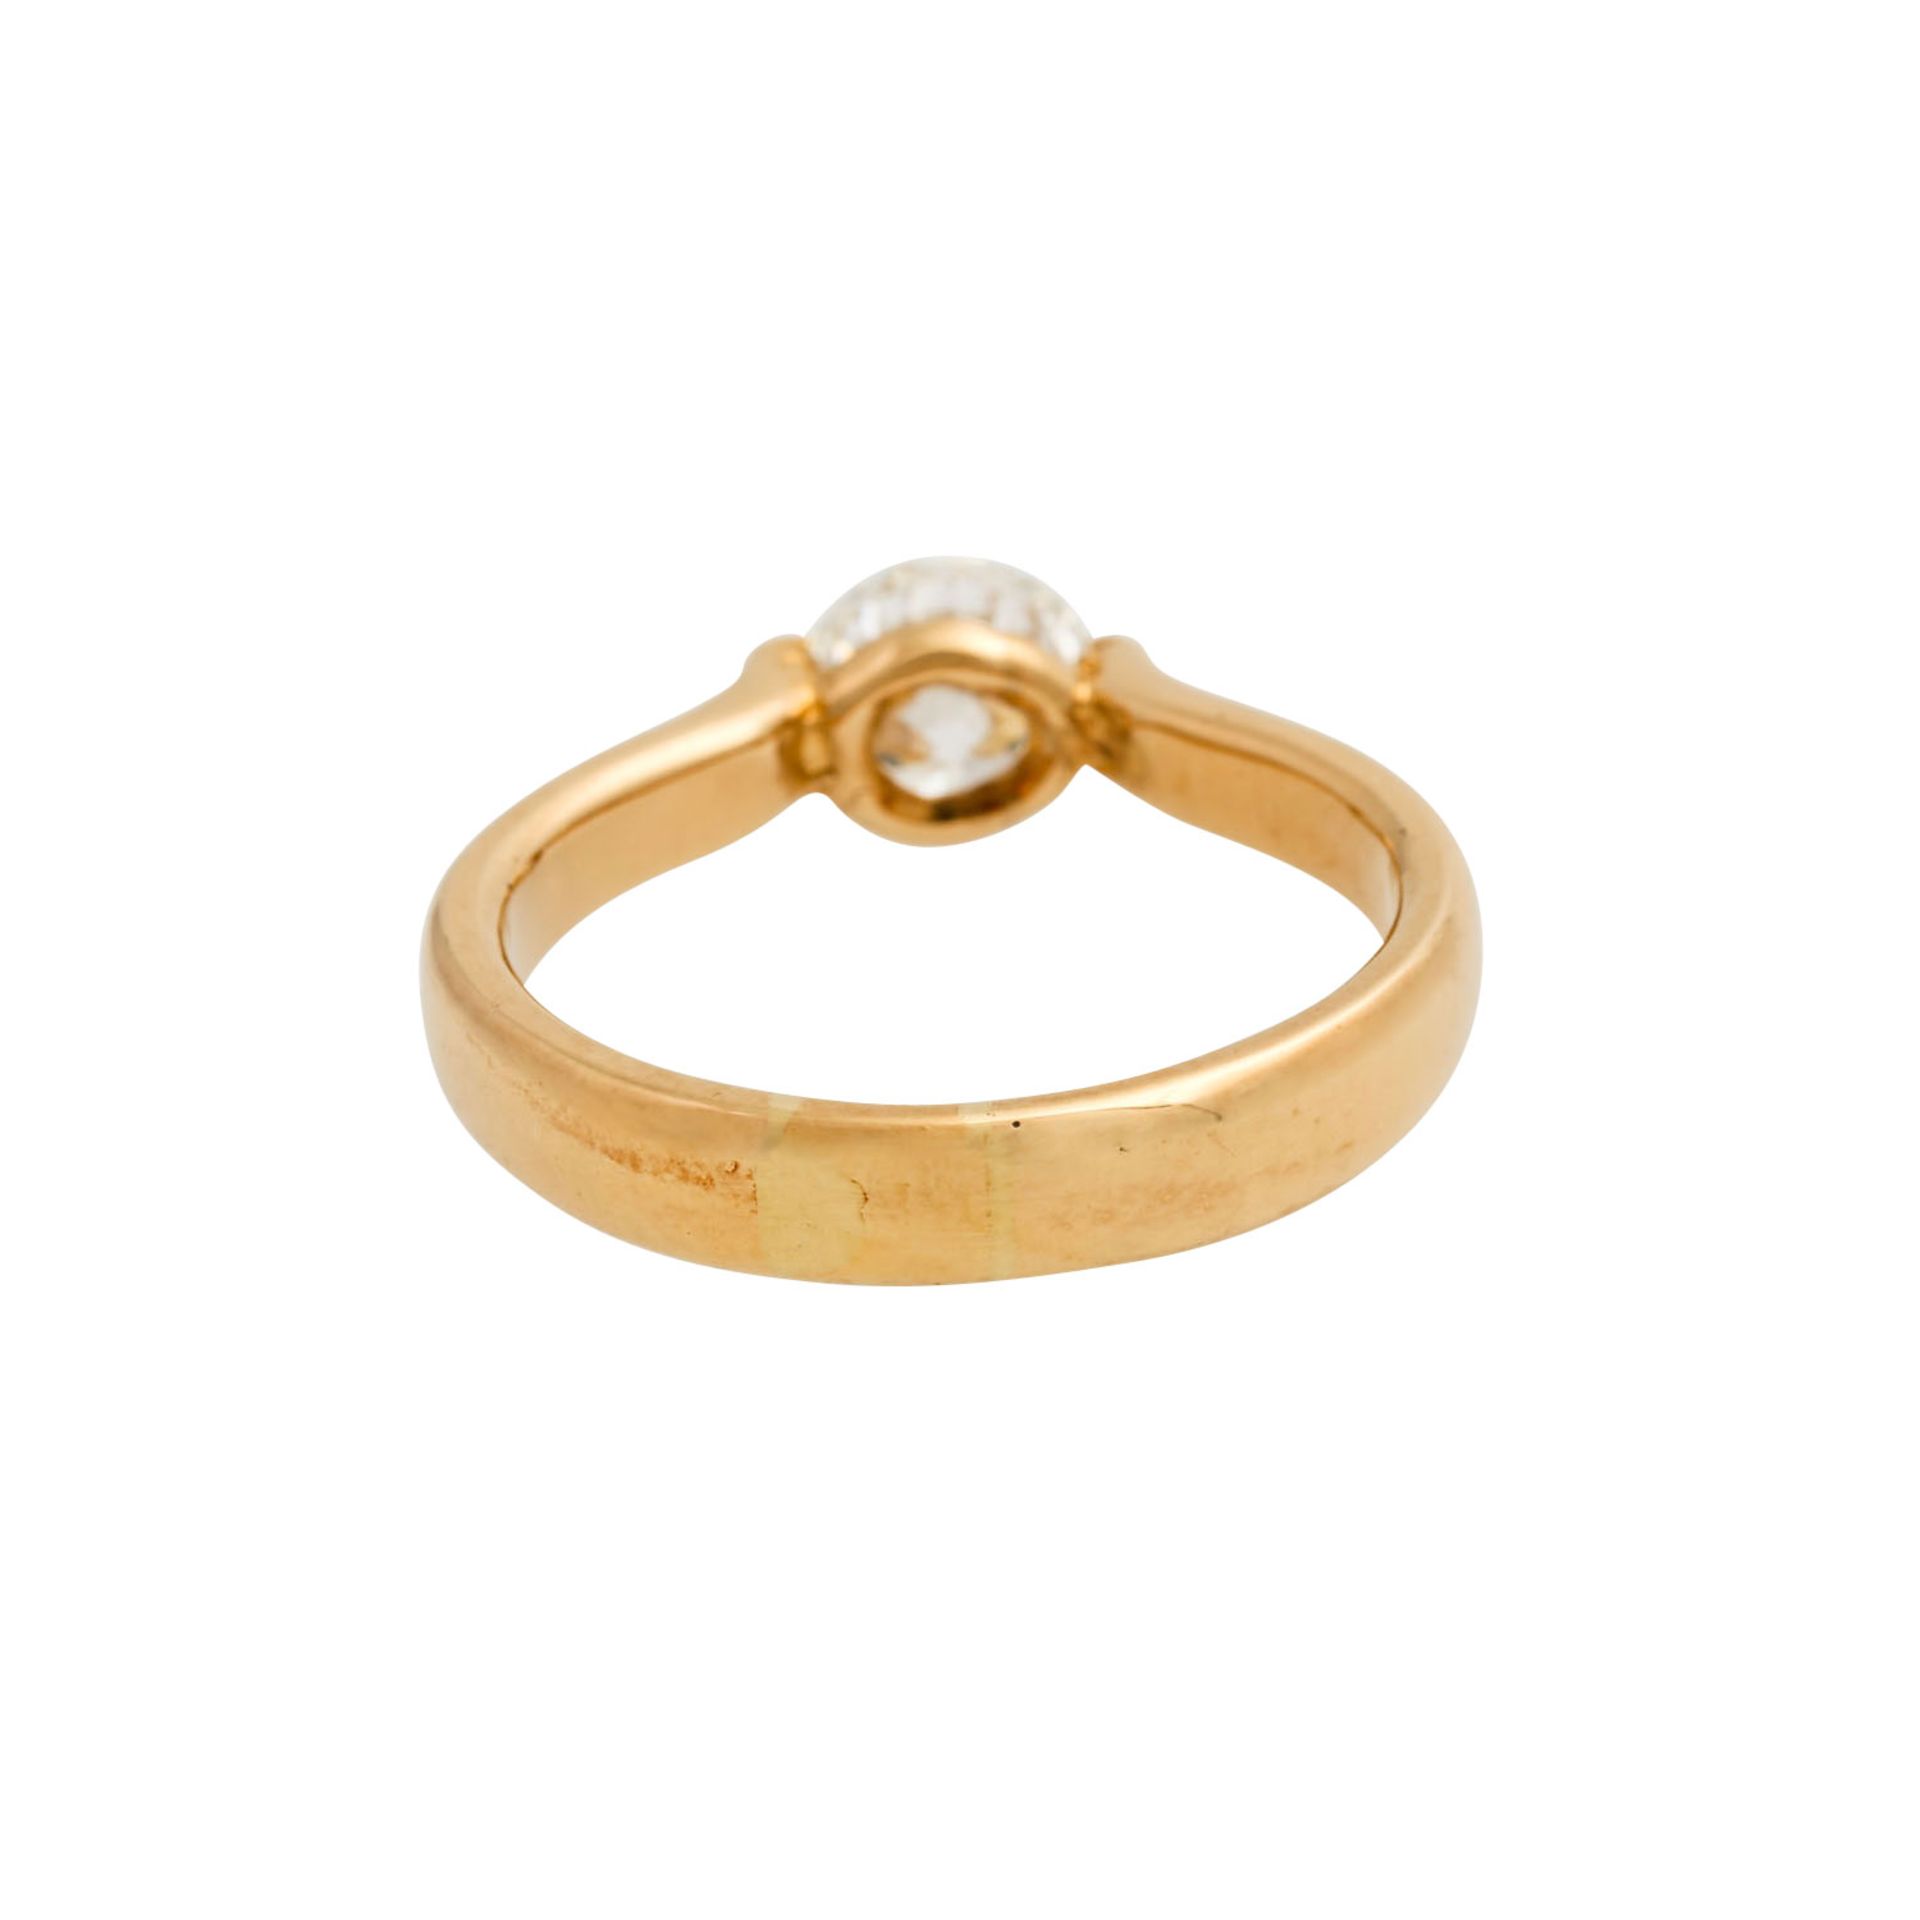 Ring mit Brillant ca. 1 ct,ca. GW (K)/VS, keine Fluoreszenz, GG 18K, 5,6 gr, RW: 56, 2 - Image 4 of 6